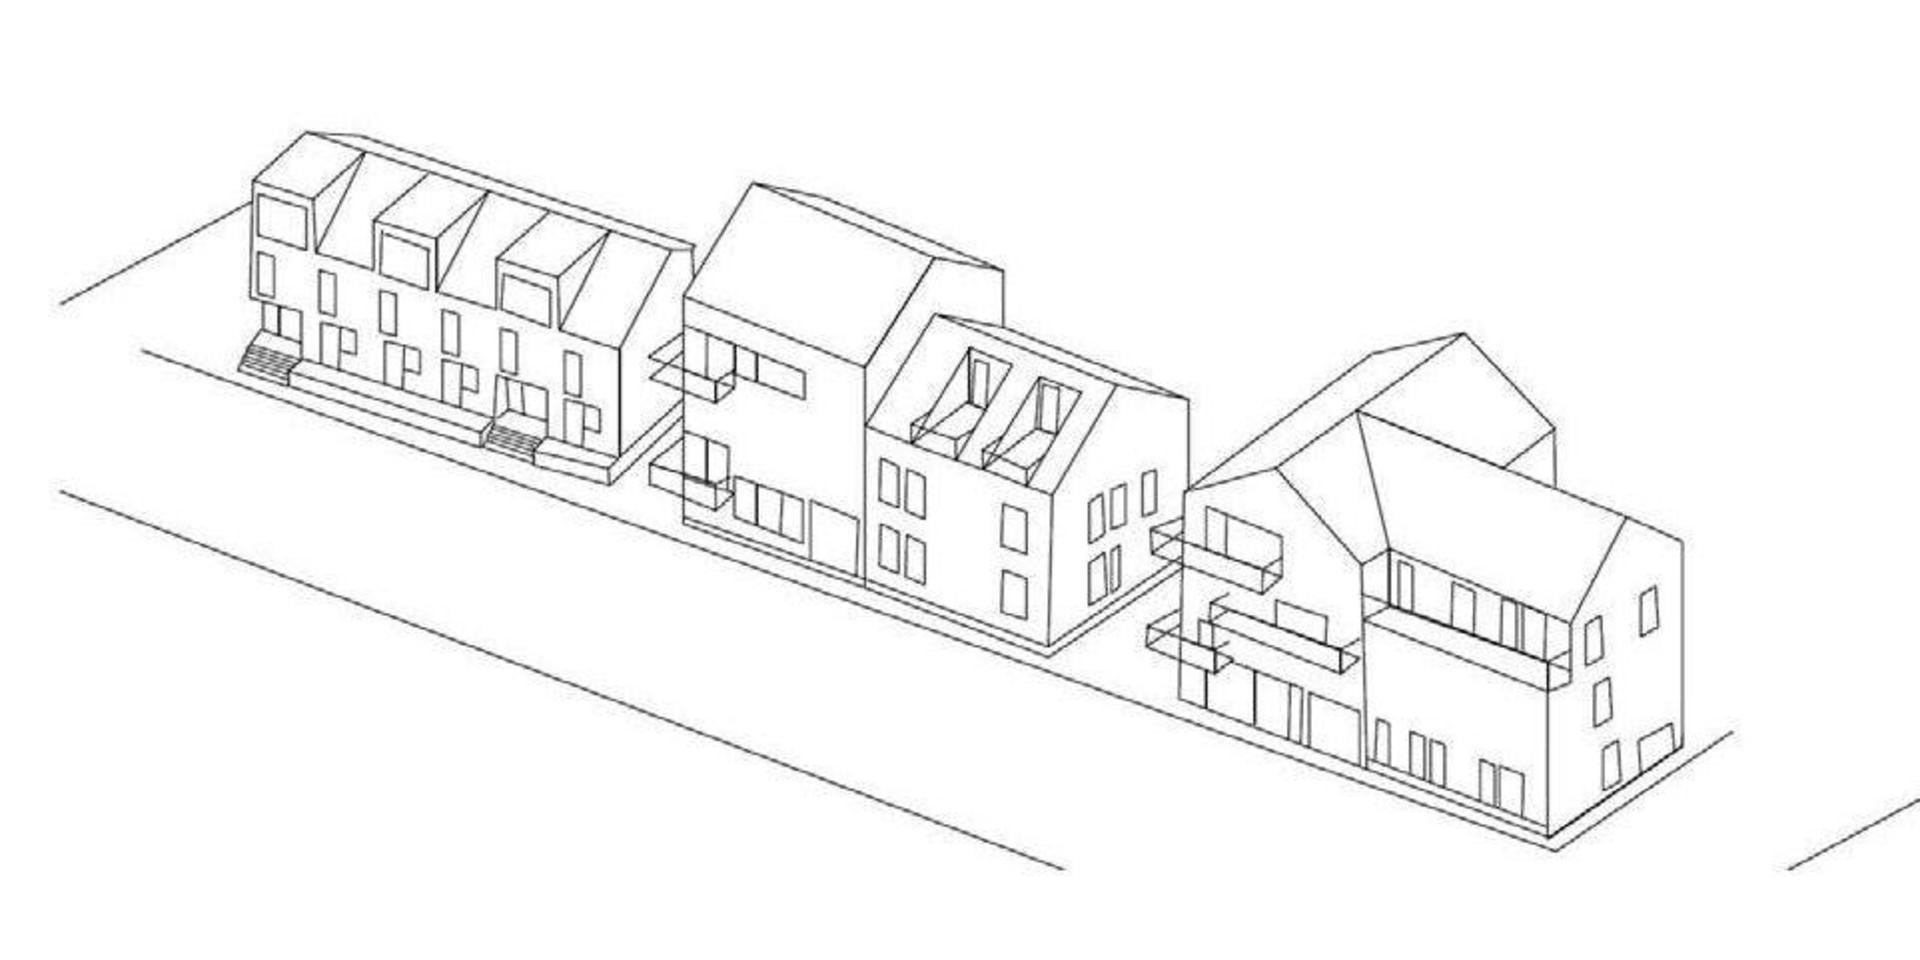 Kommunens exempelskiss visar hur den nya bebyggelsen skulle kunna utformas utmed den planerade förlängningen av Sibyllavägen.